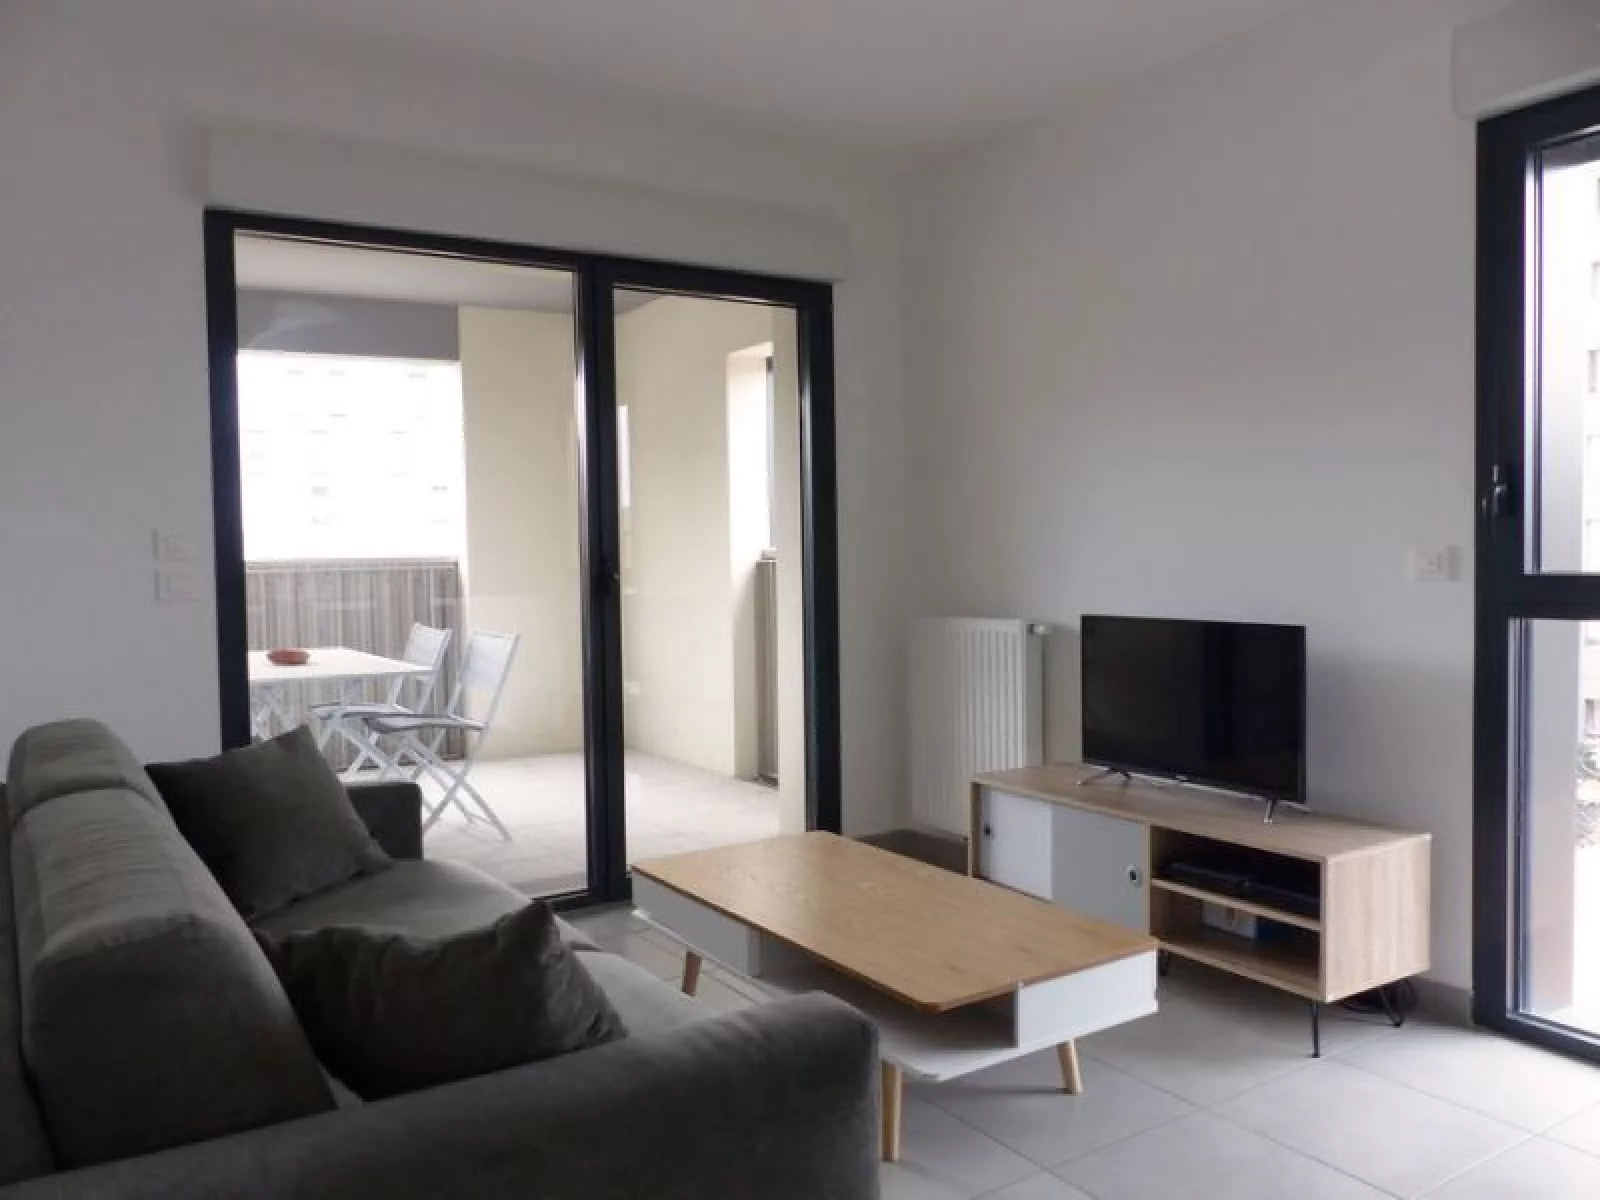 Vente appartement meublé 2 pièces de 43m² (Bordeaux - Bassins à flot)